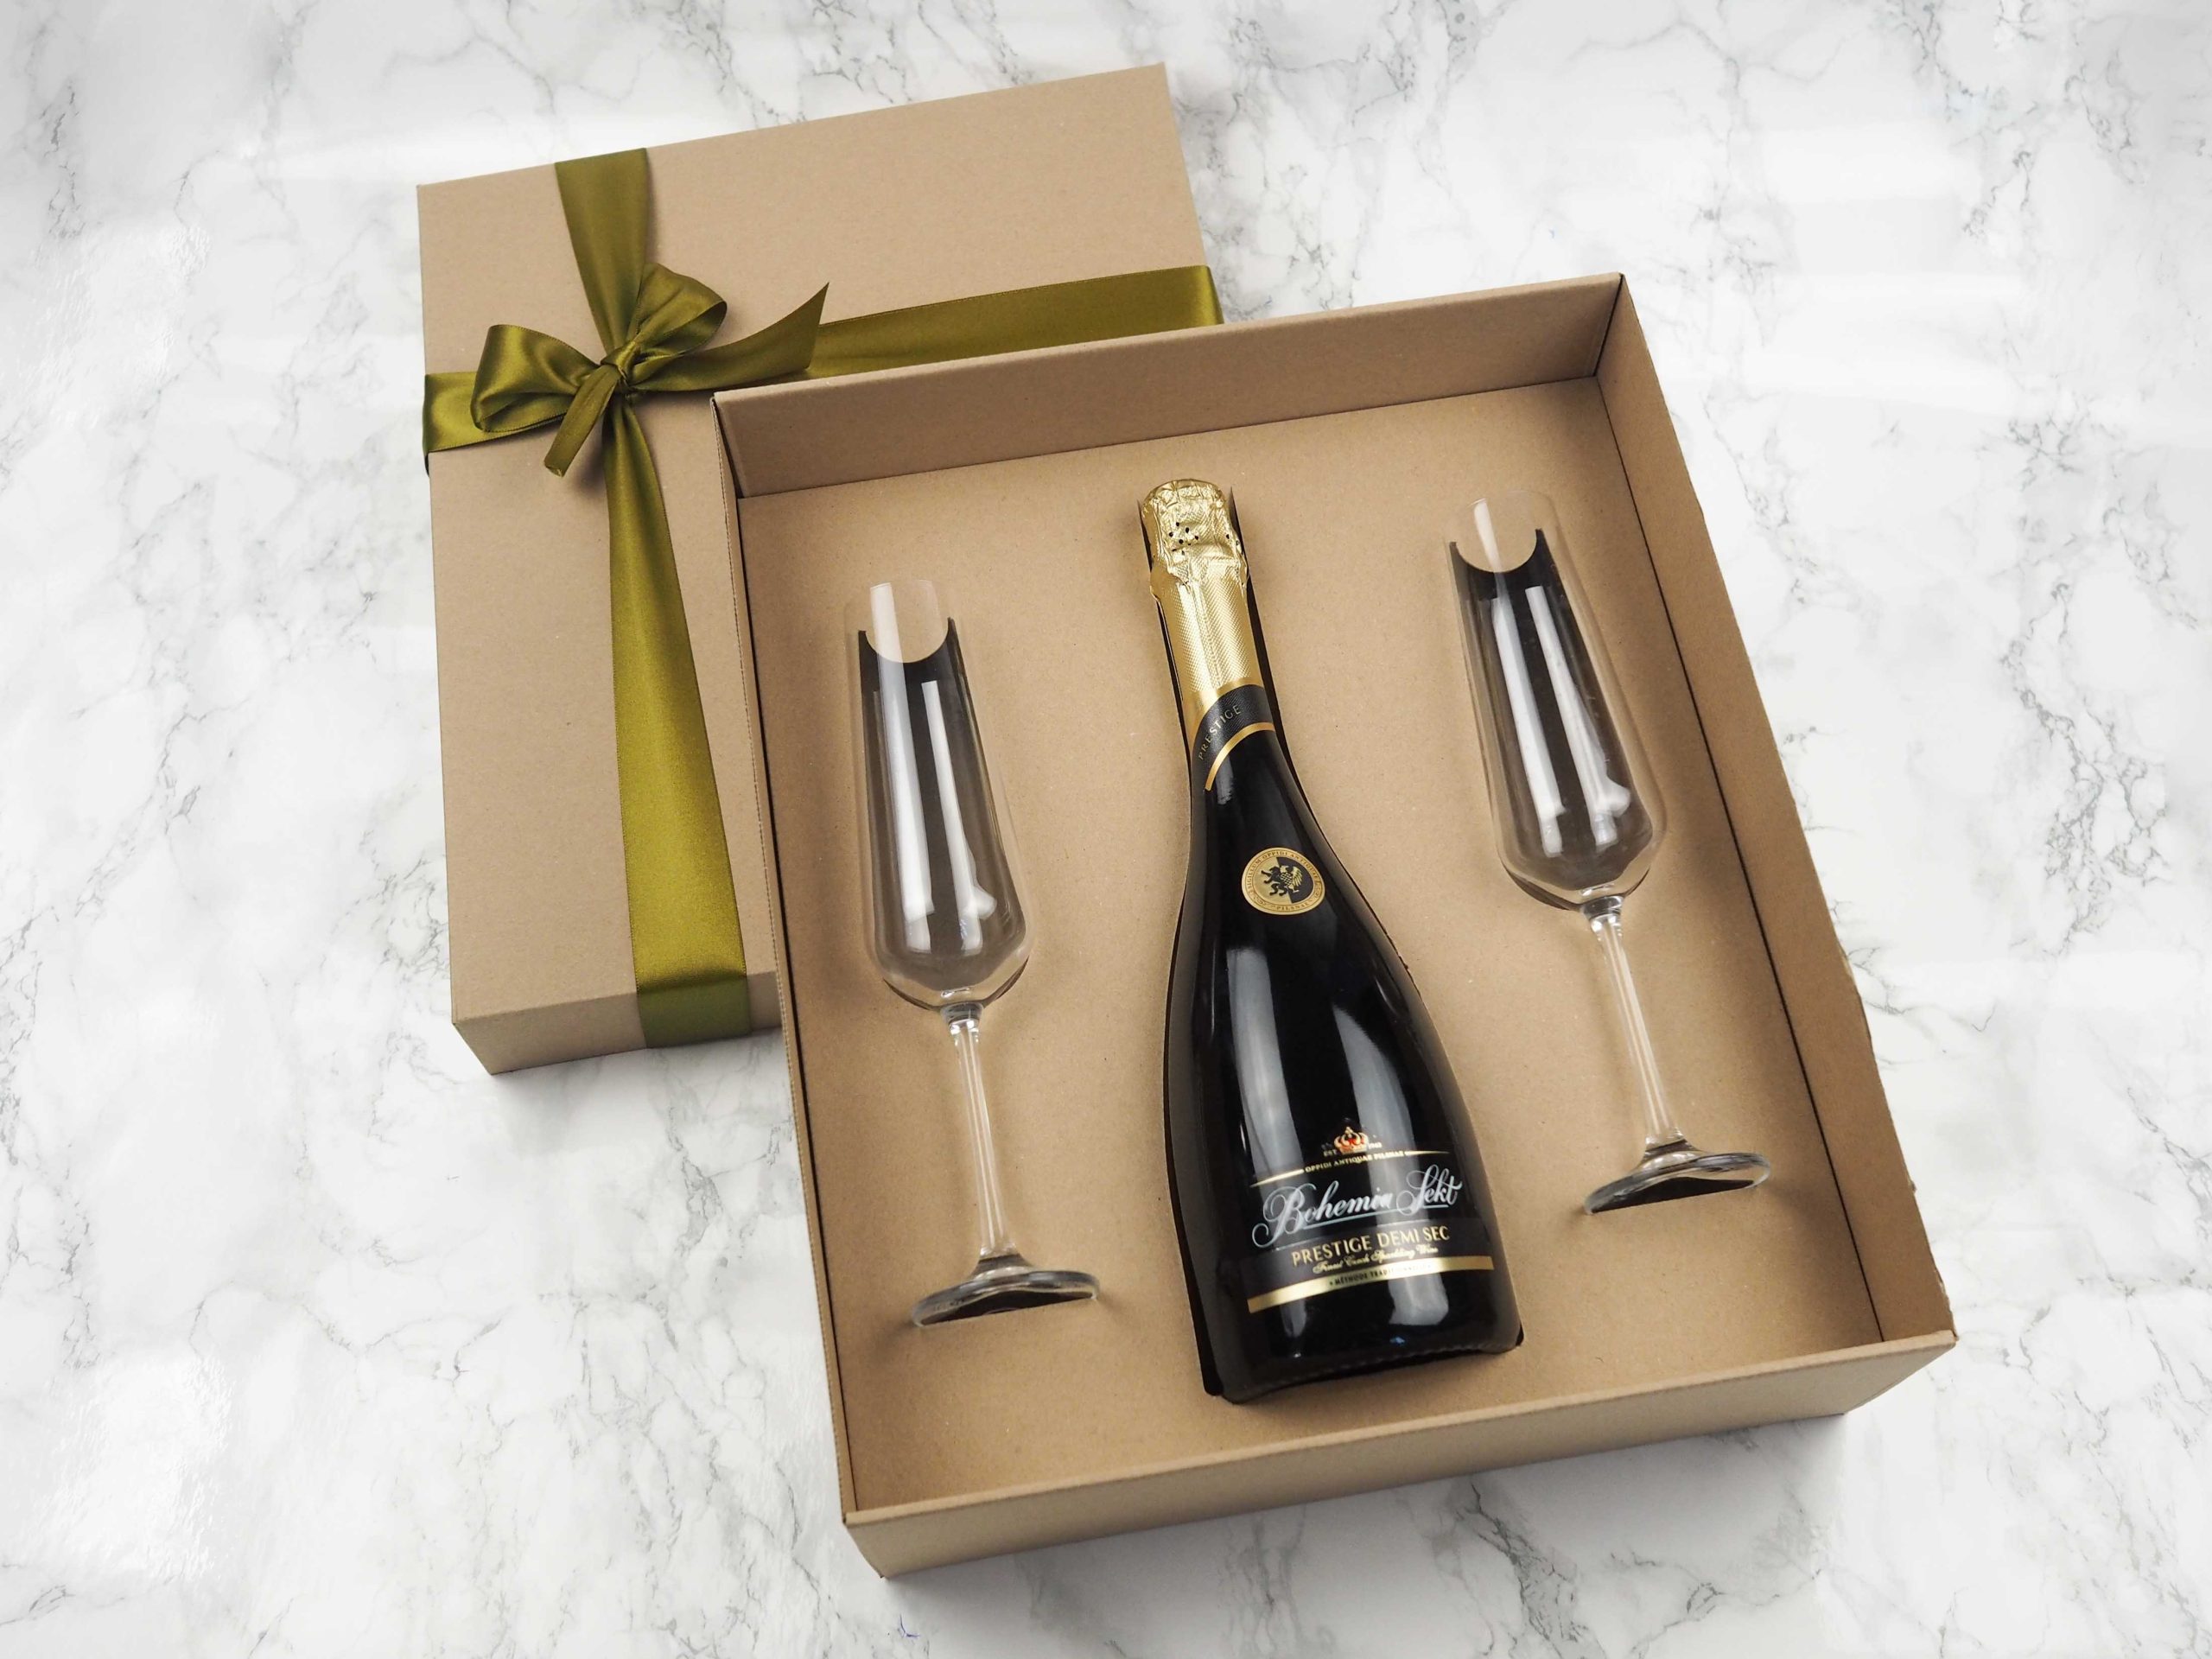 Dárkový balíček Prestige Sekt v sobě obsahuje Bohemia Sekt Prestige a dvě skleničky na šampaňské, na které lze přidat i gravírování loga.  Darujte luxusní balíček, který potěší každého obdarovaného.